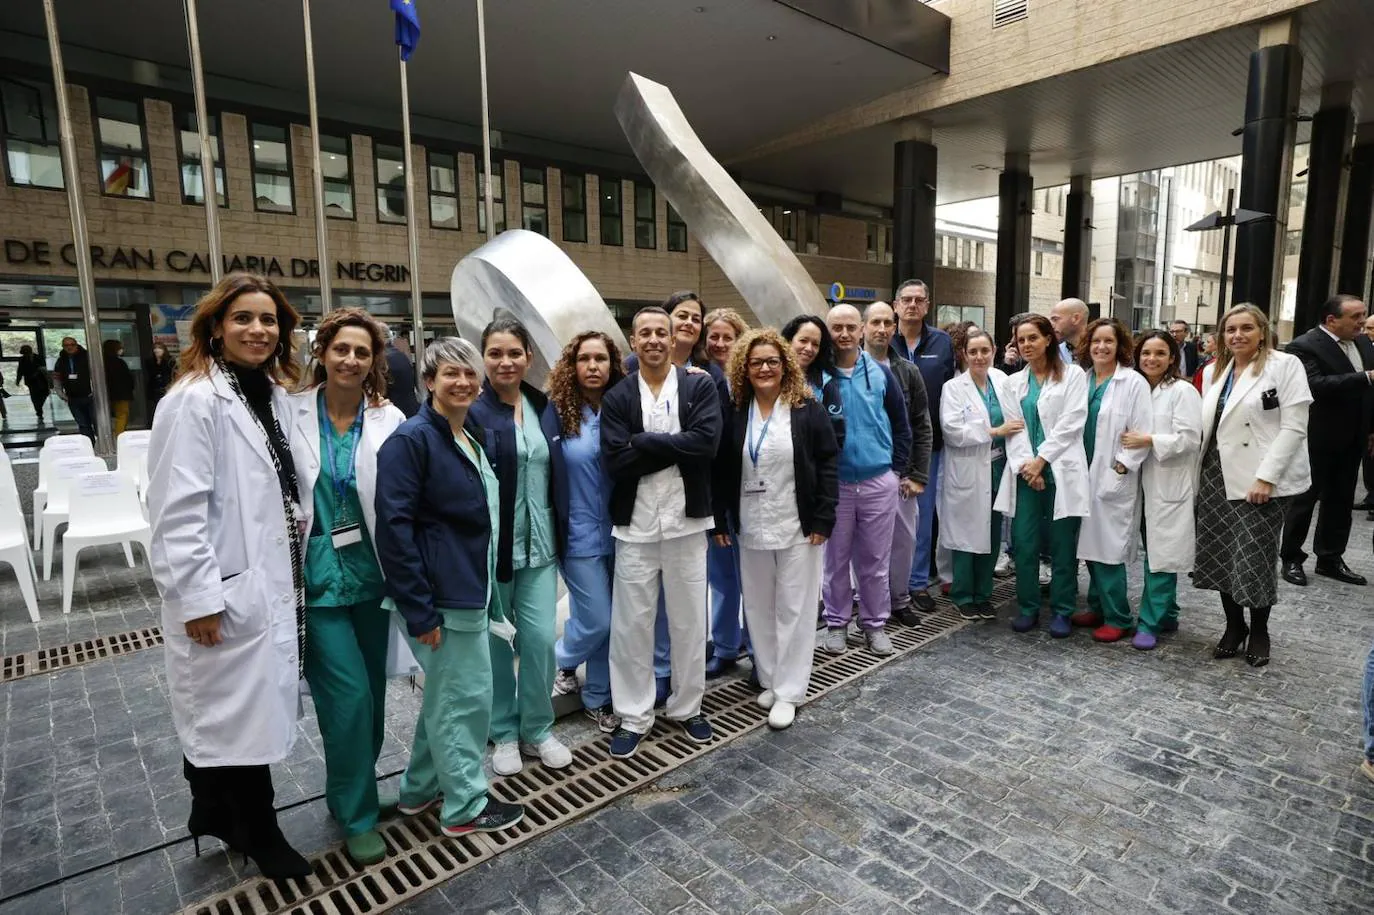 Fotos: El Hospital Dr. Negrín presenta una escultura para reconocer la labor de los sanitarios